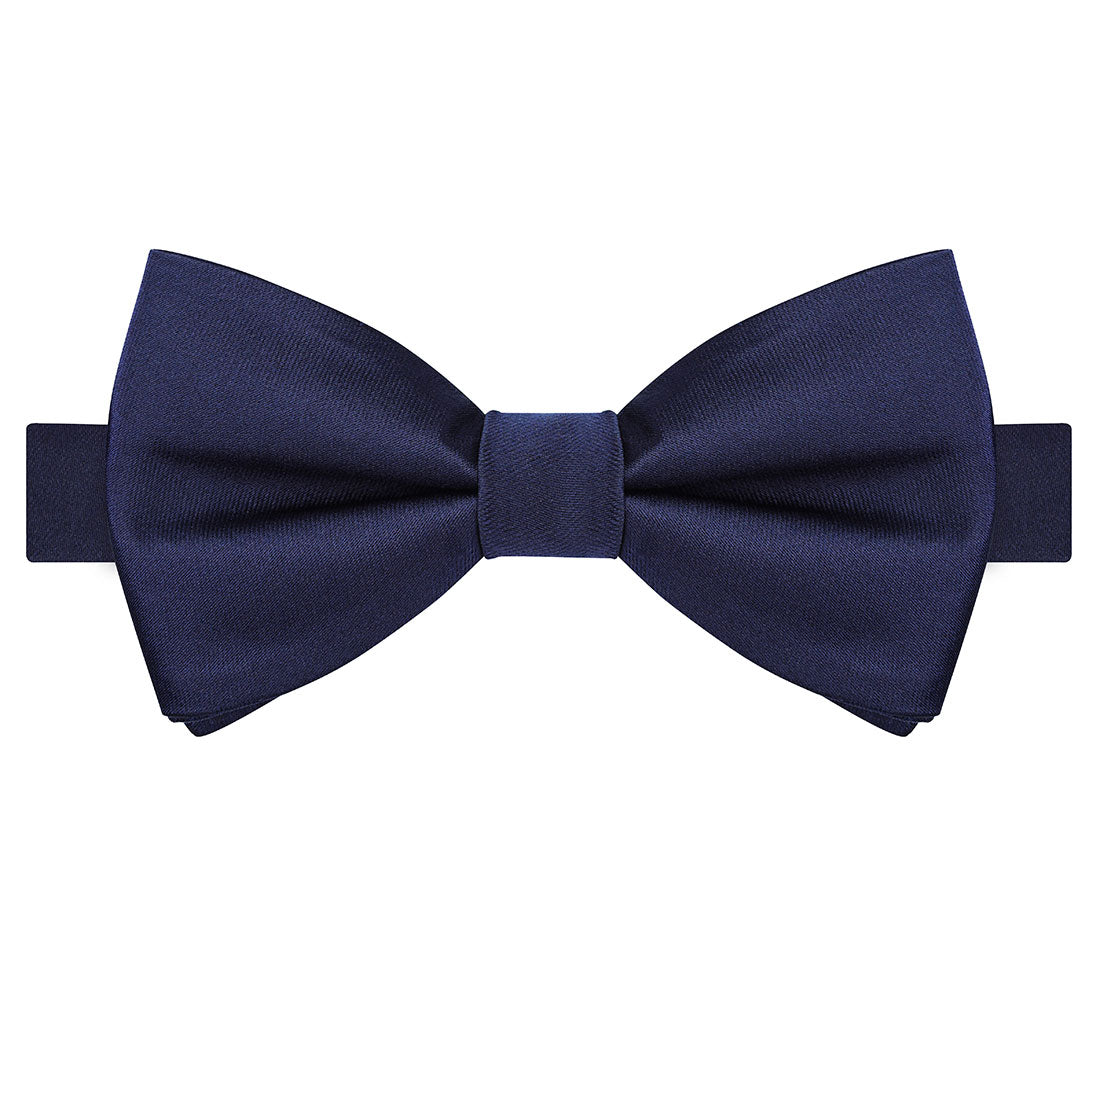 Navy Satin Bow Tie - Tie, bowtie, pocket square  | Kissties